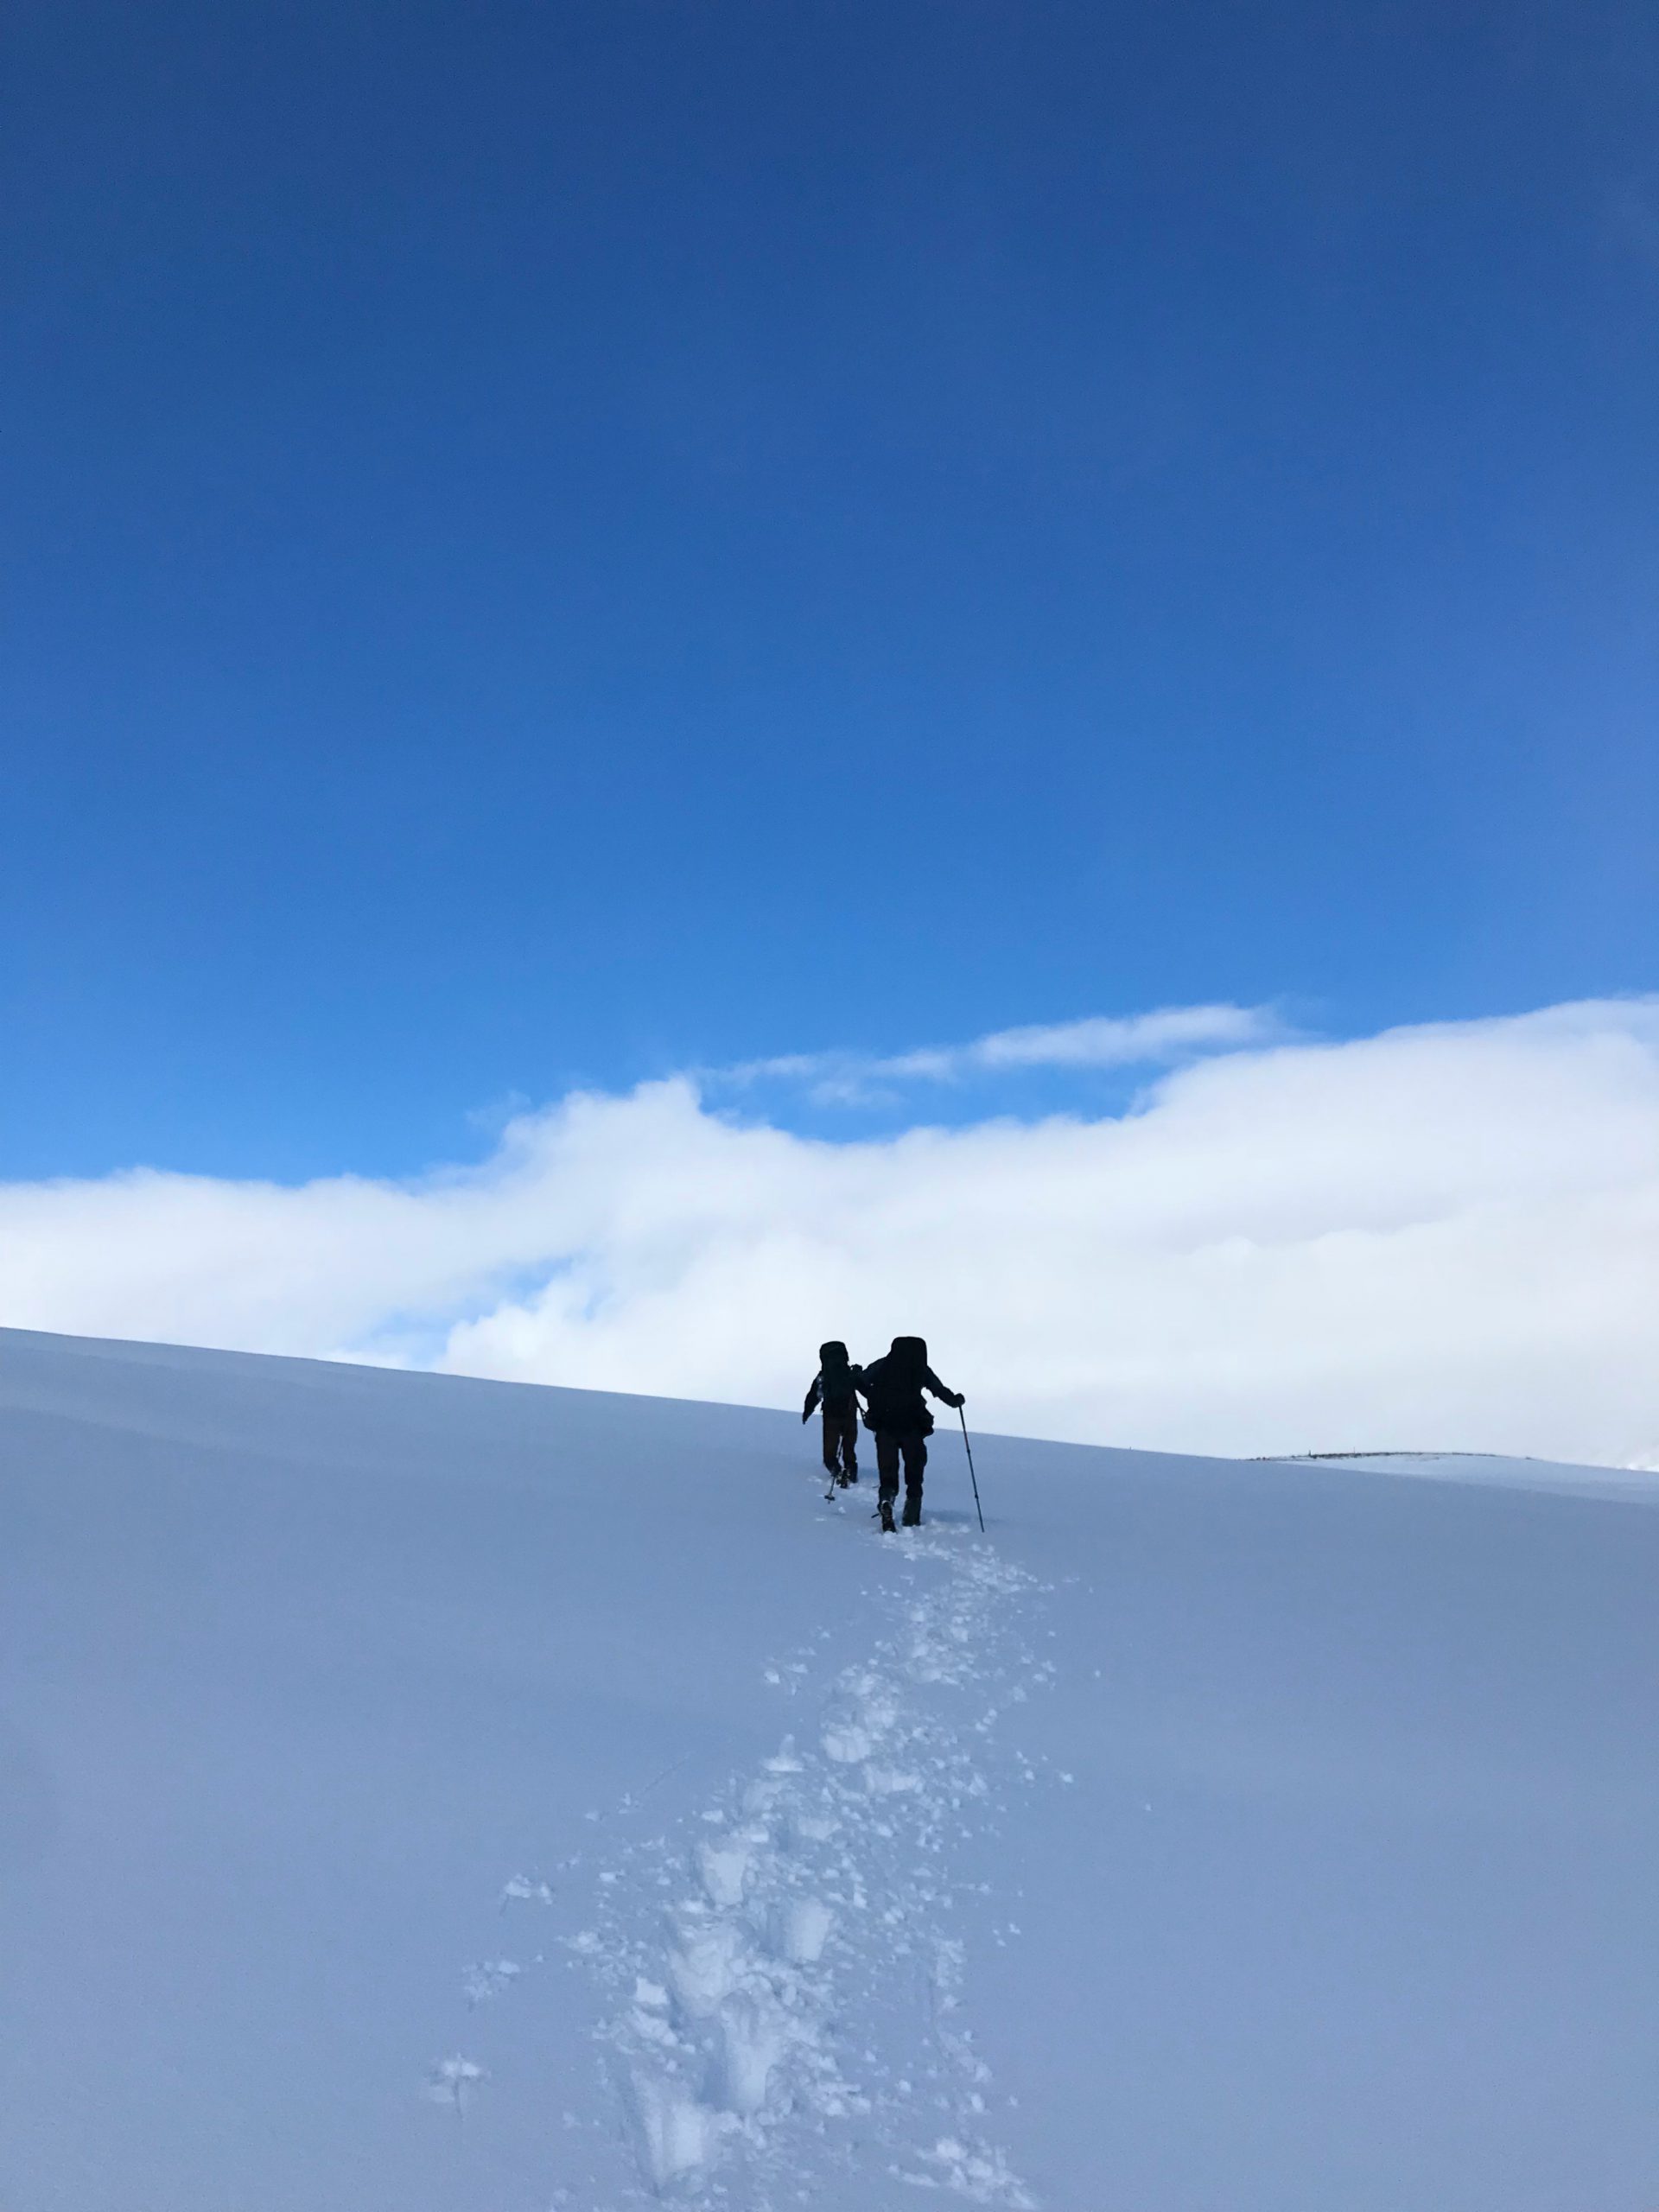 Laugavegur trail in Iceland